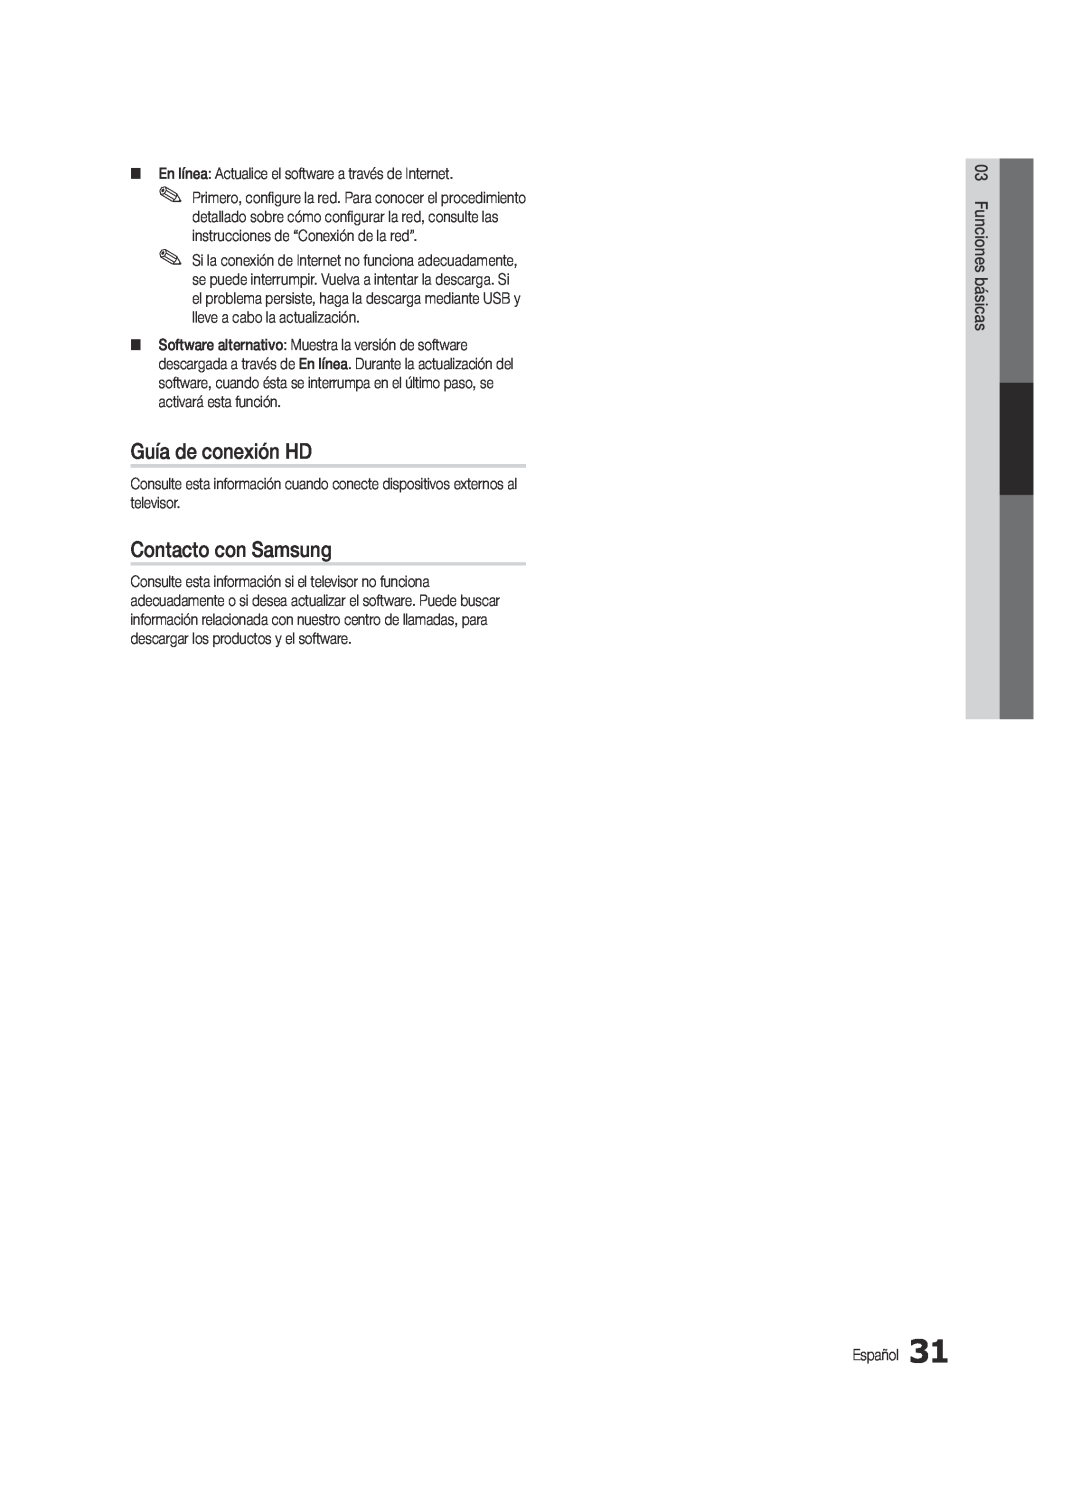 Samsung Series C9, BN68-03088A-01 user manual Guía de conexión HD, Contacto con Samsung, básicas03 Funciones 